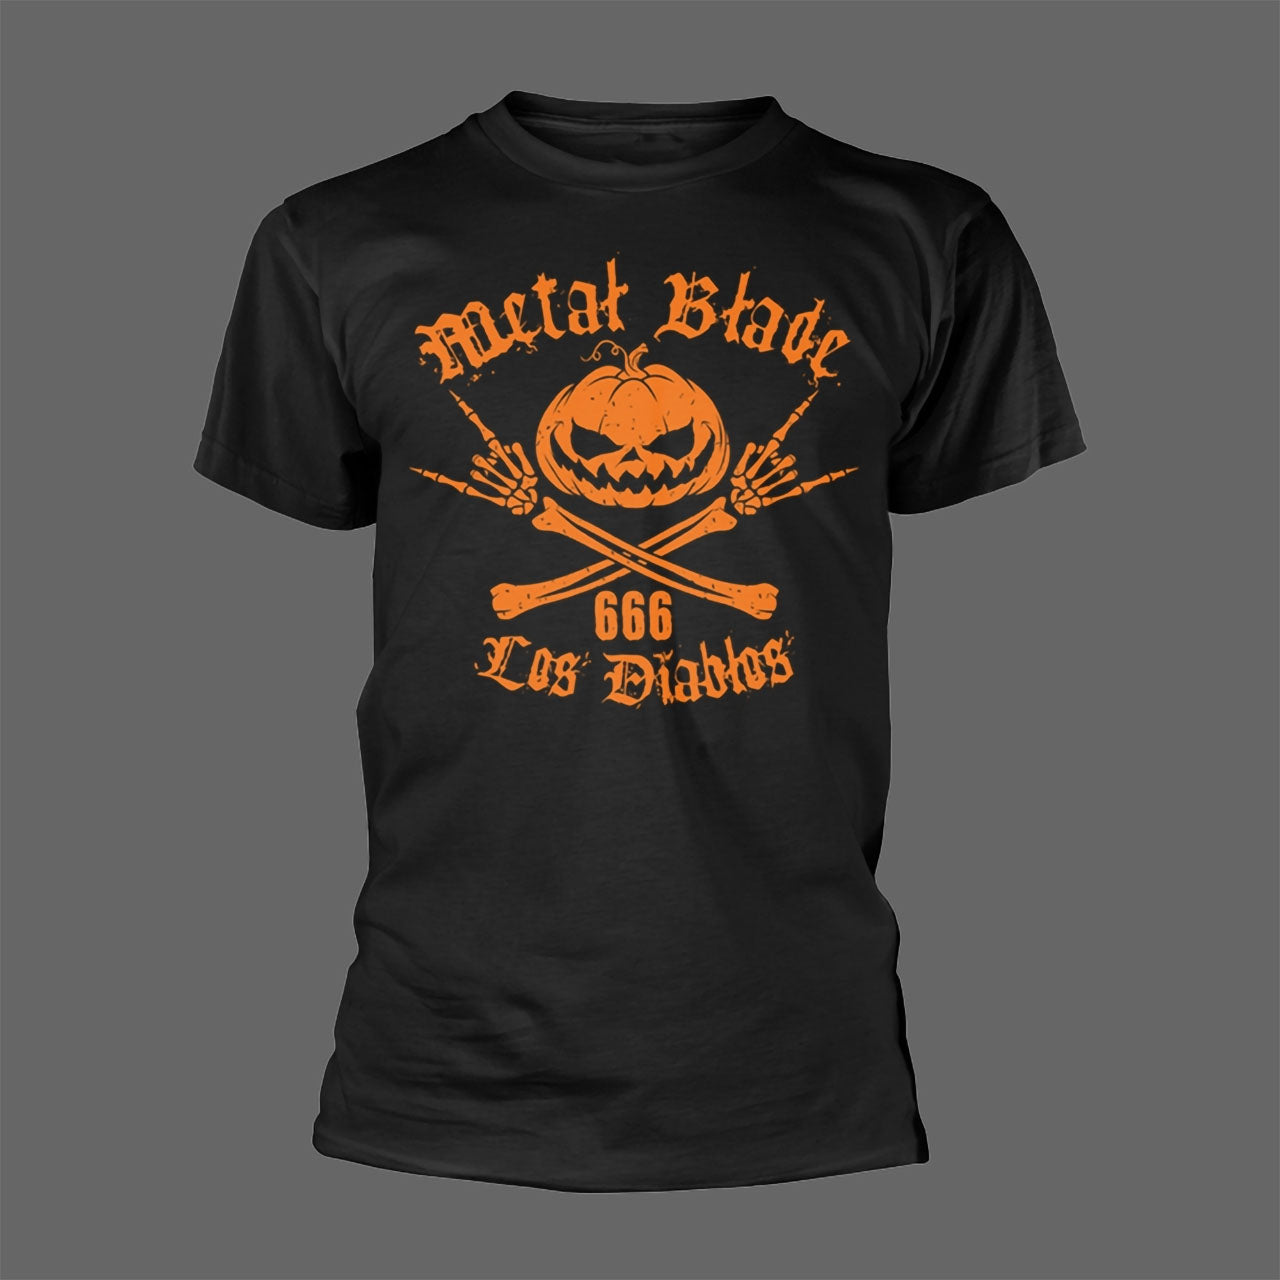 Metal Blade Records - Logo (Los Diablos) (T-Shirt)